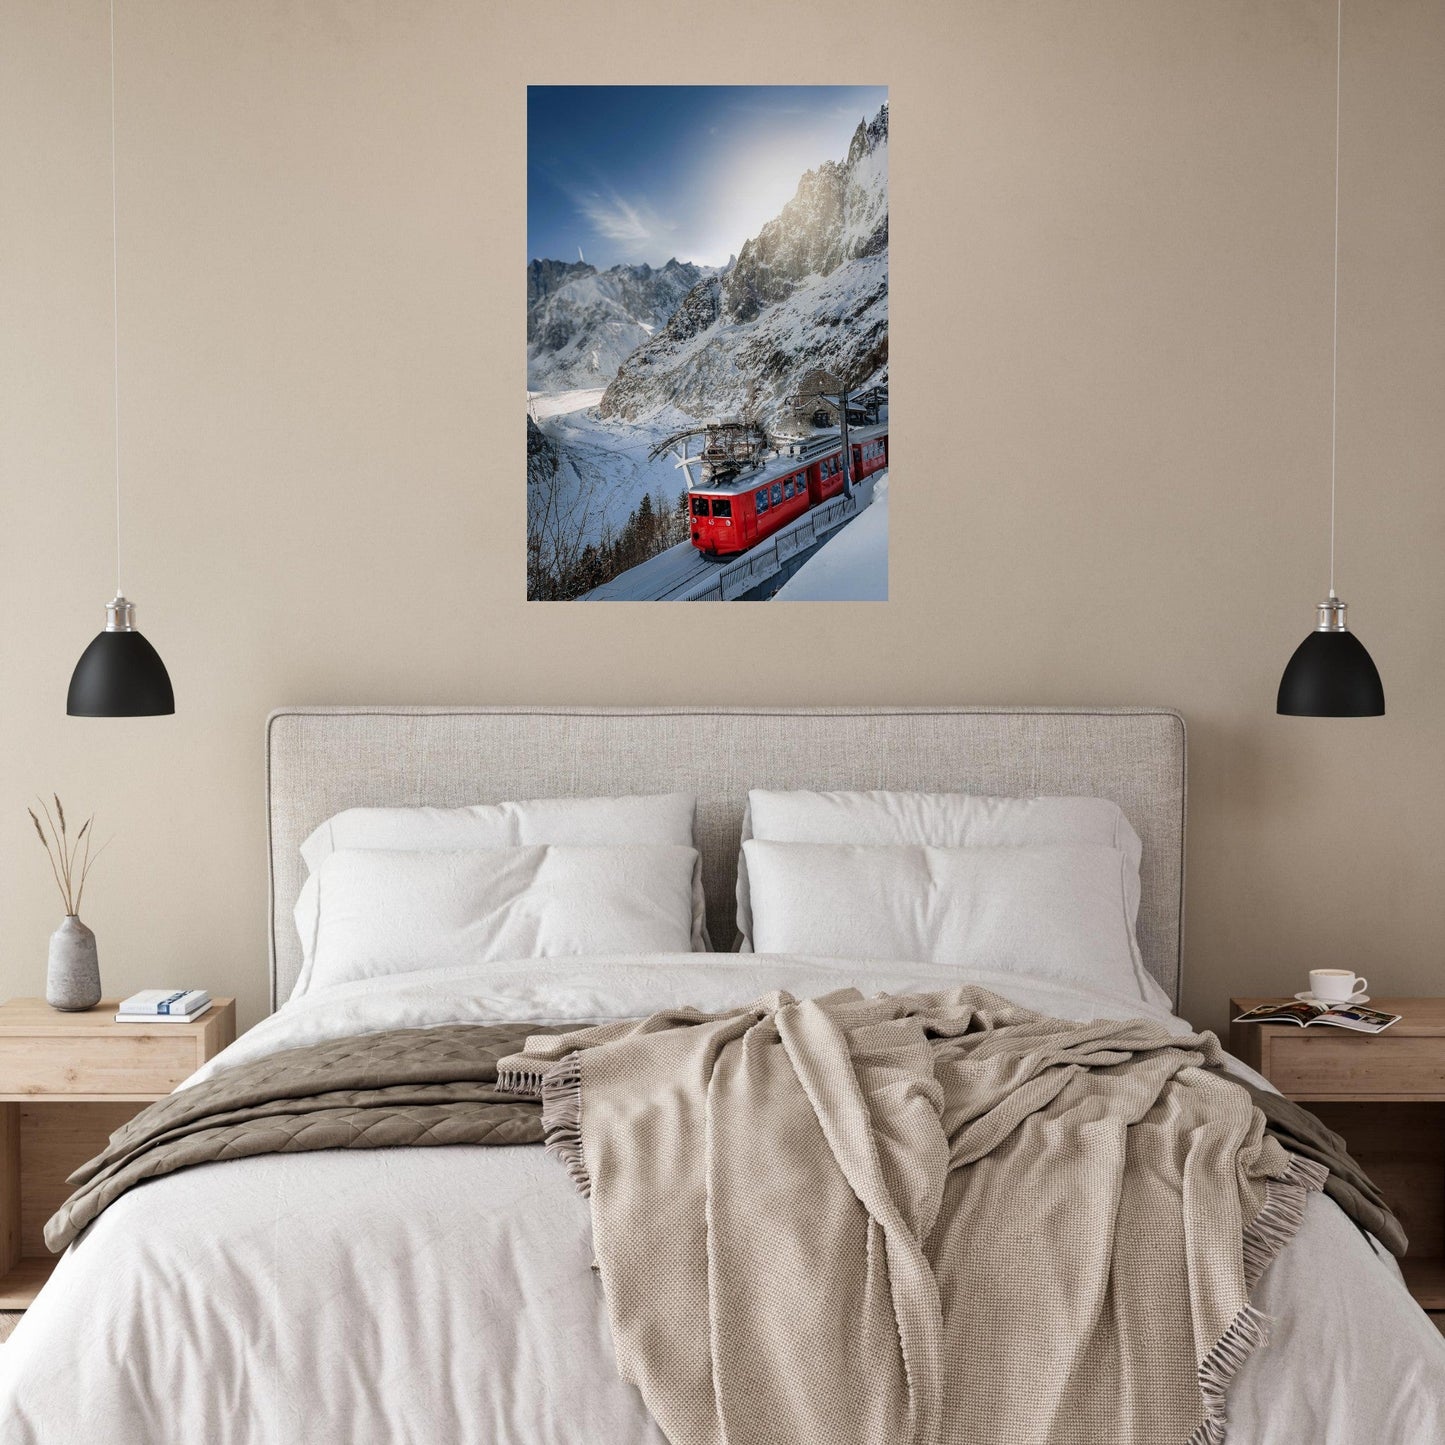 Vente Photo du train Montenvers Mer de Glace, Chamonix Mont-Blanc - Tableau photo alu montagne